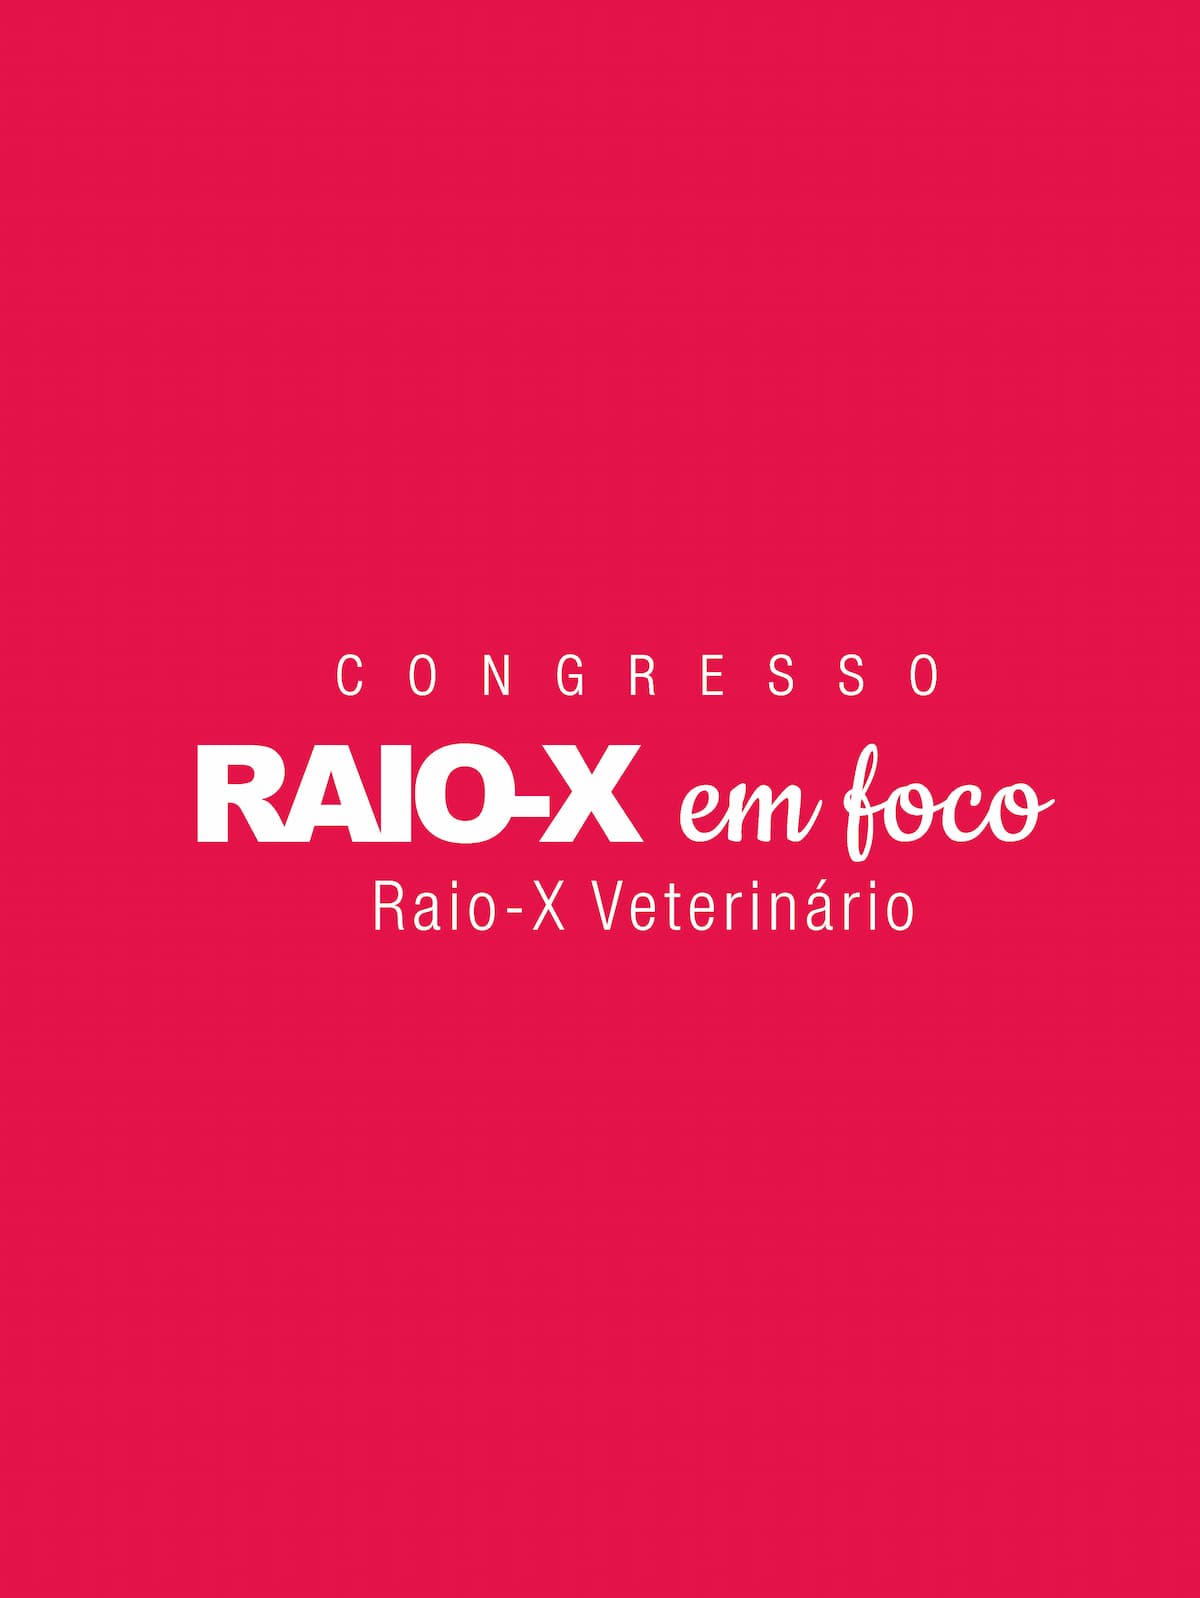 Congresso Raio-X em Foco Veterinários 